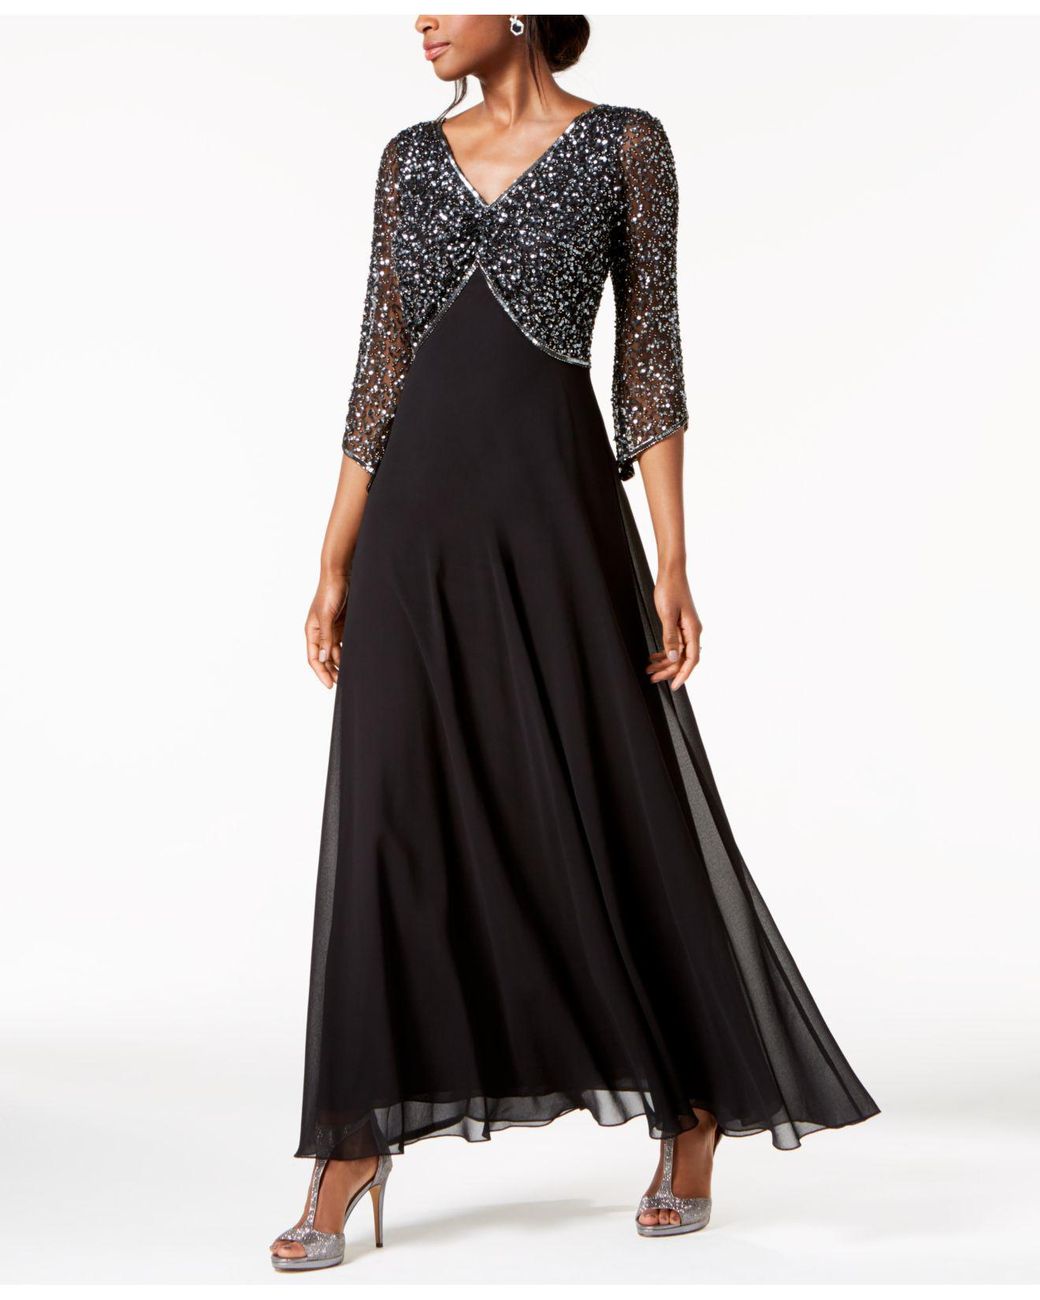 J Black in 3/4-sleeve Lyst | Embellished Gown Kara